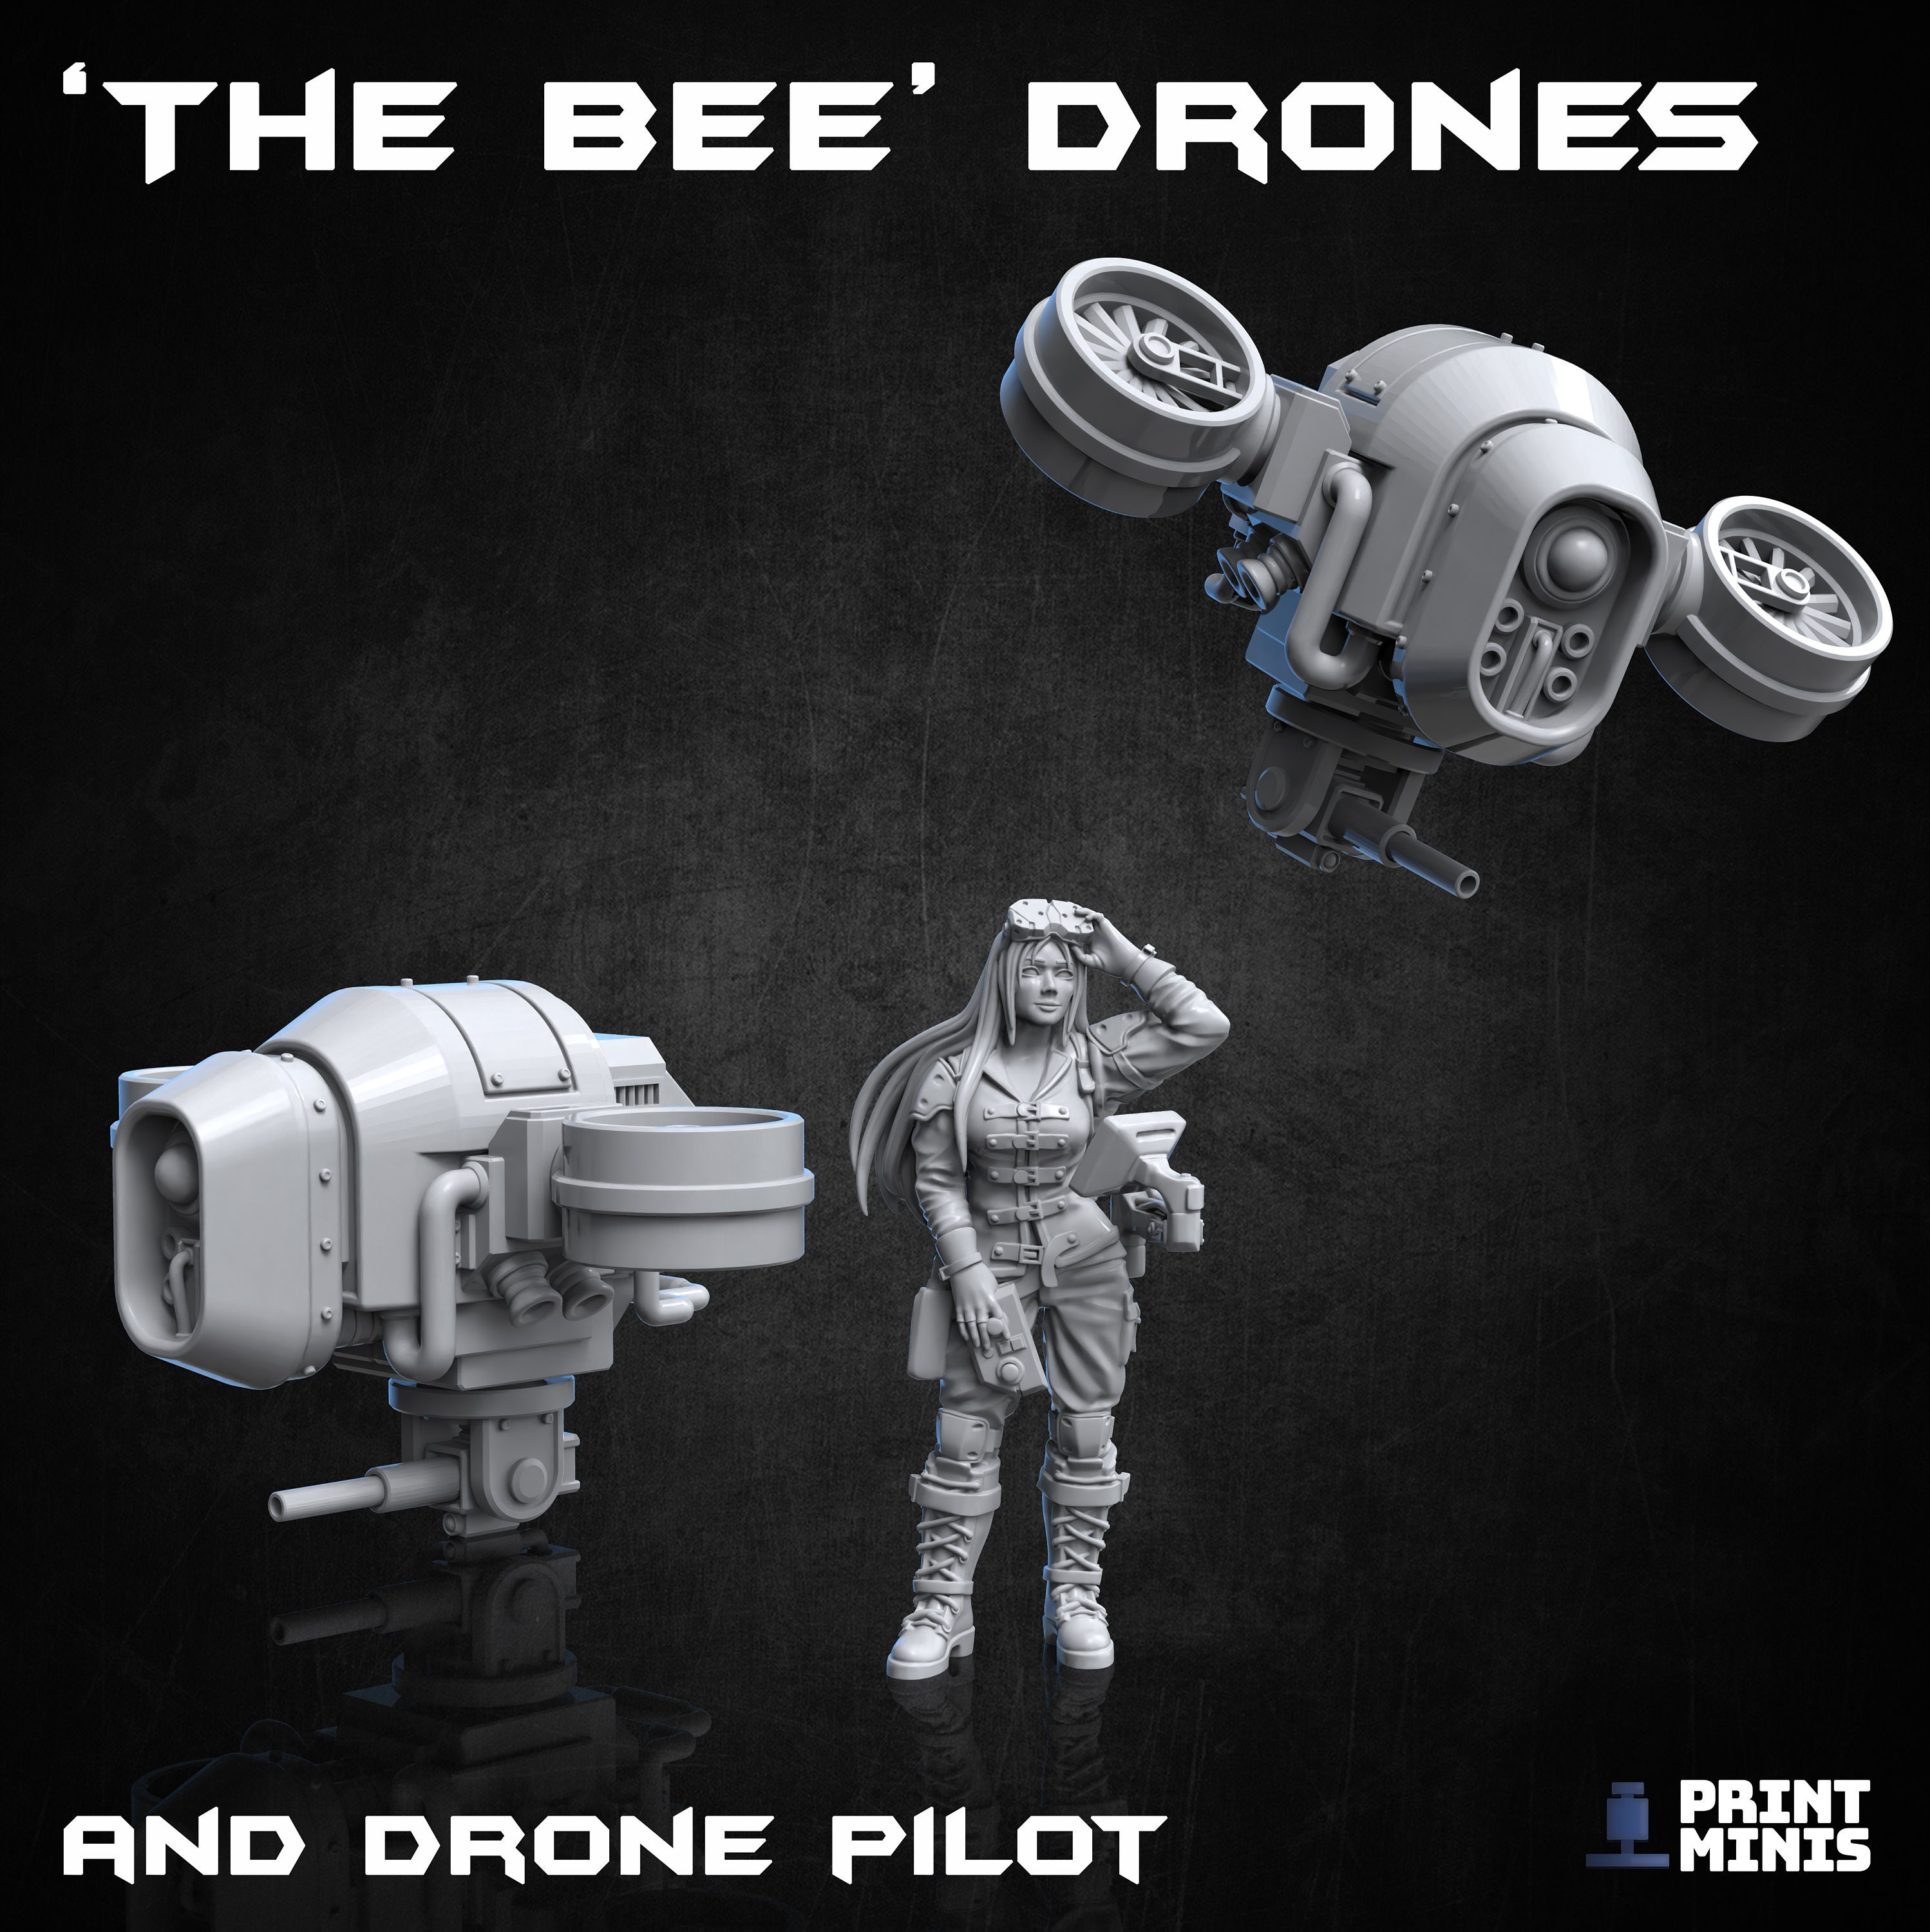 Mini drones personalizados, Bee